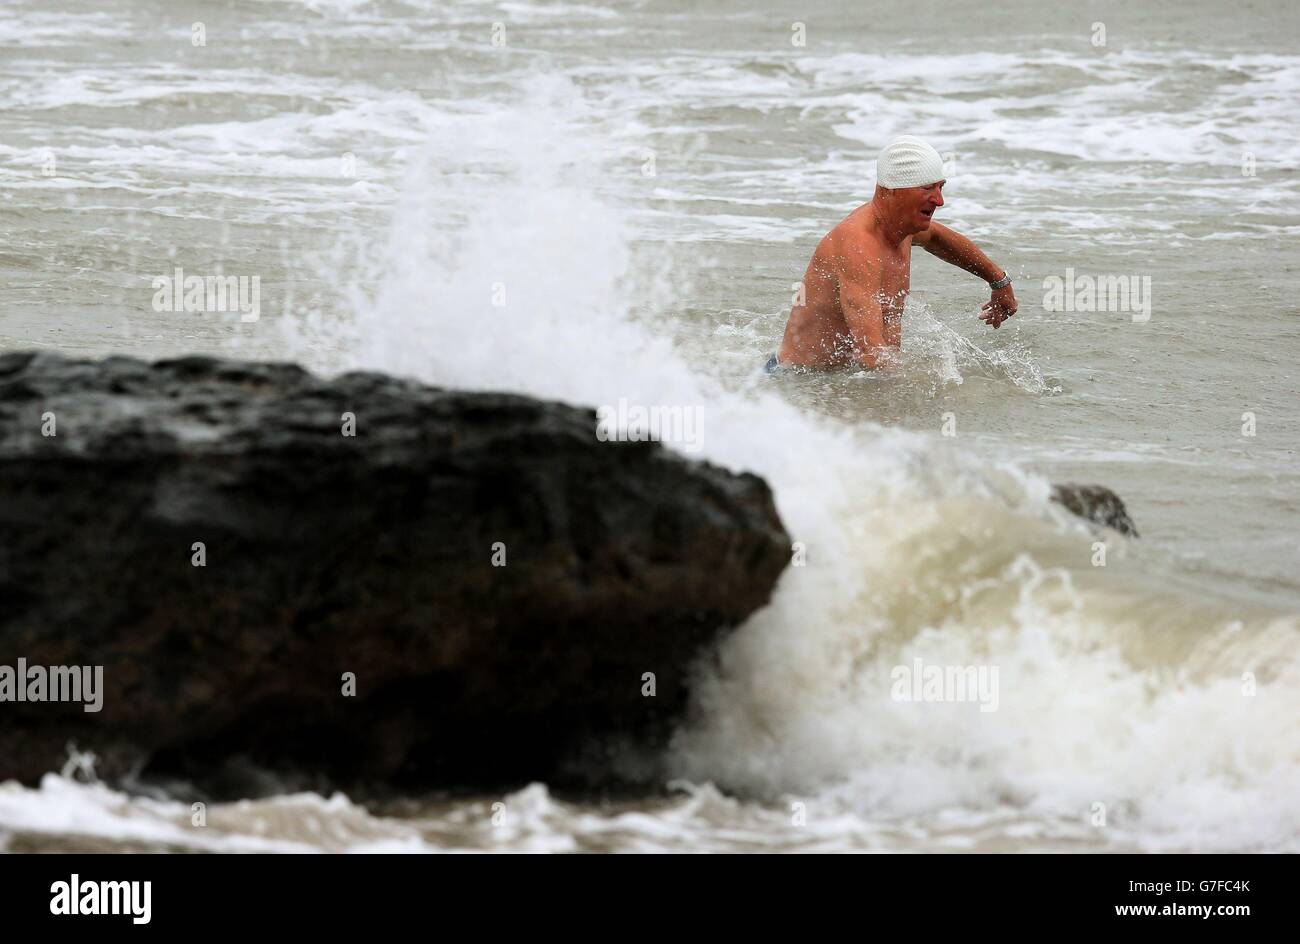 Ein Mann geht trotz der widrigen Wetterbedingungen in Portmarnock, Dublin, schwimmen. Stockfoto